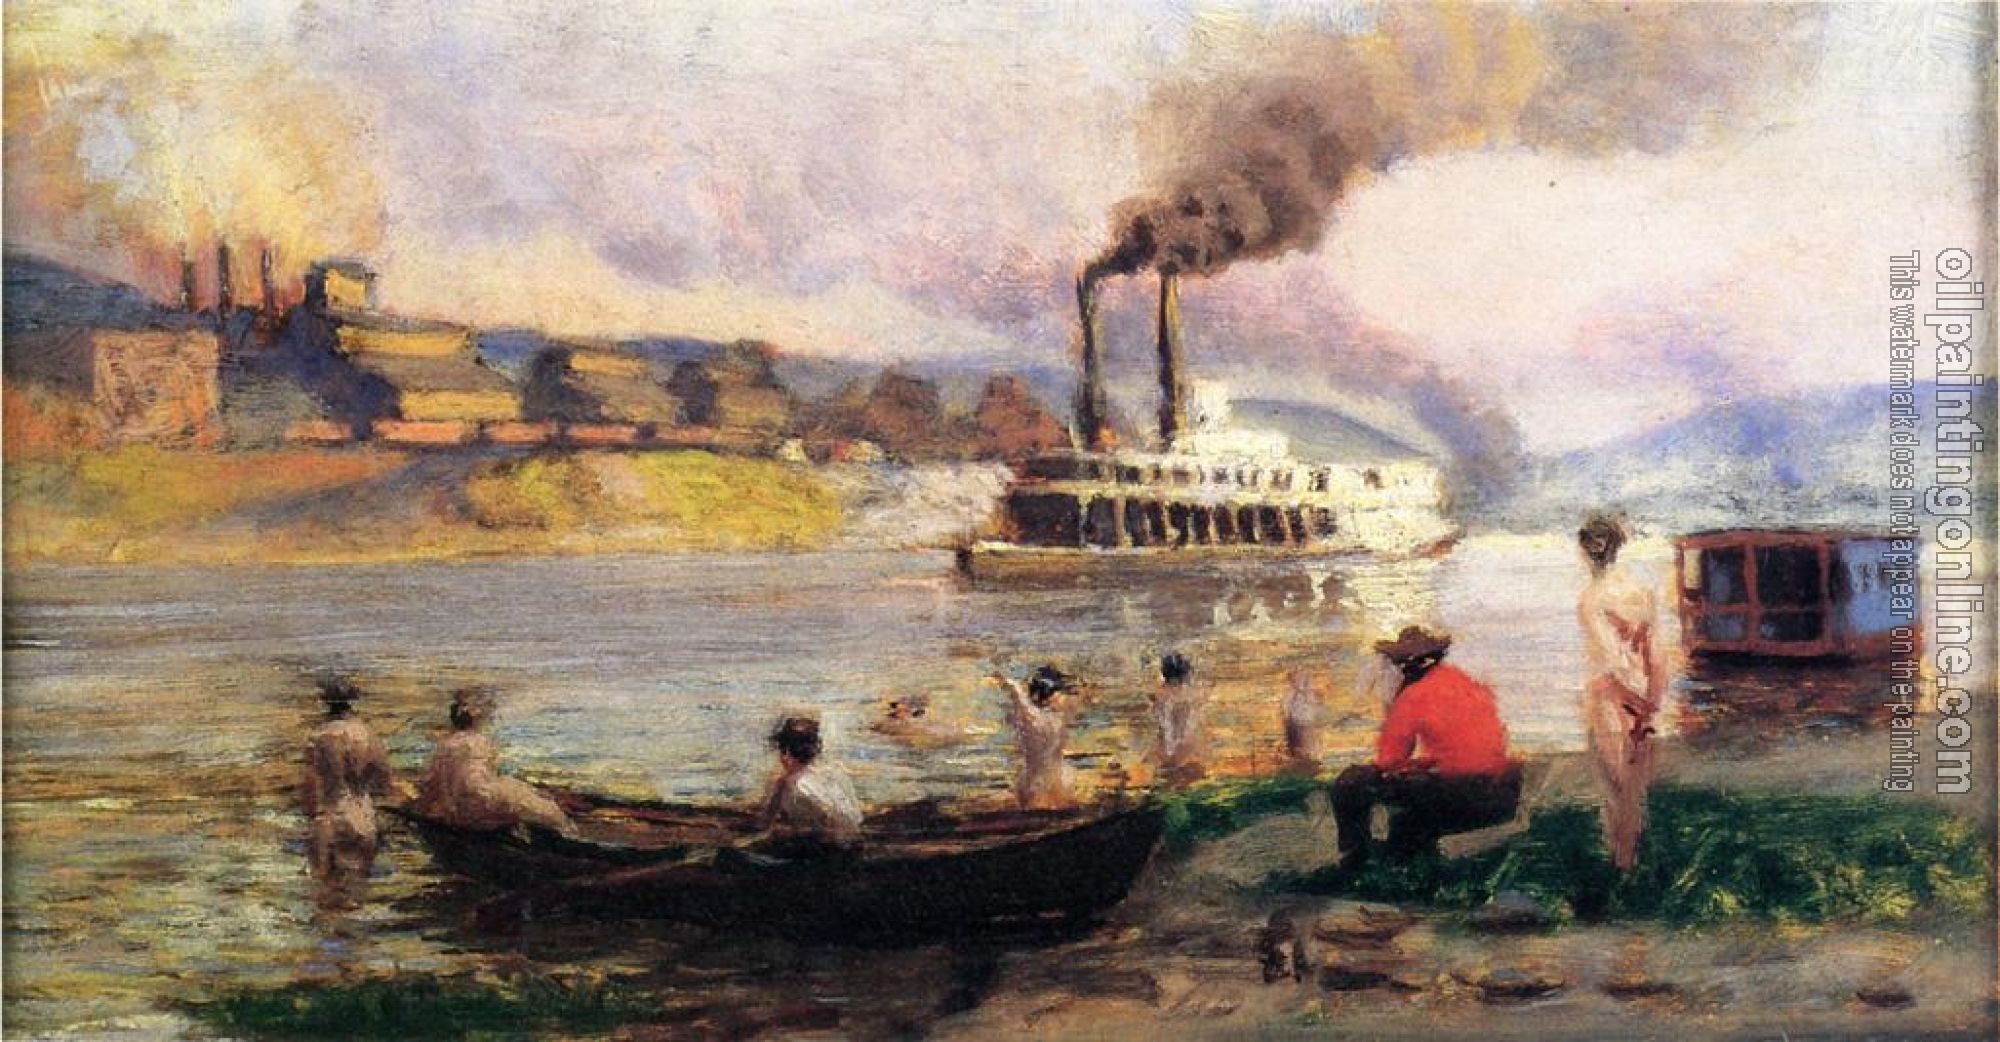 Thomas Pollock Anschutz - Steamboat on the Ohio